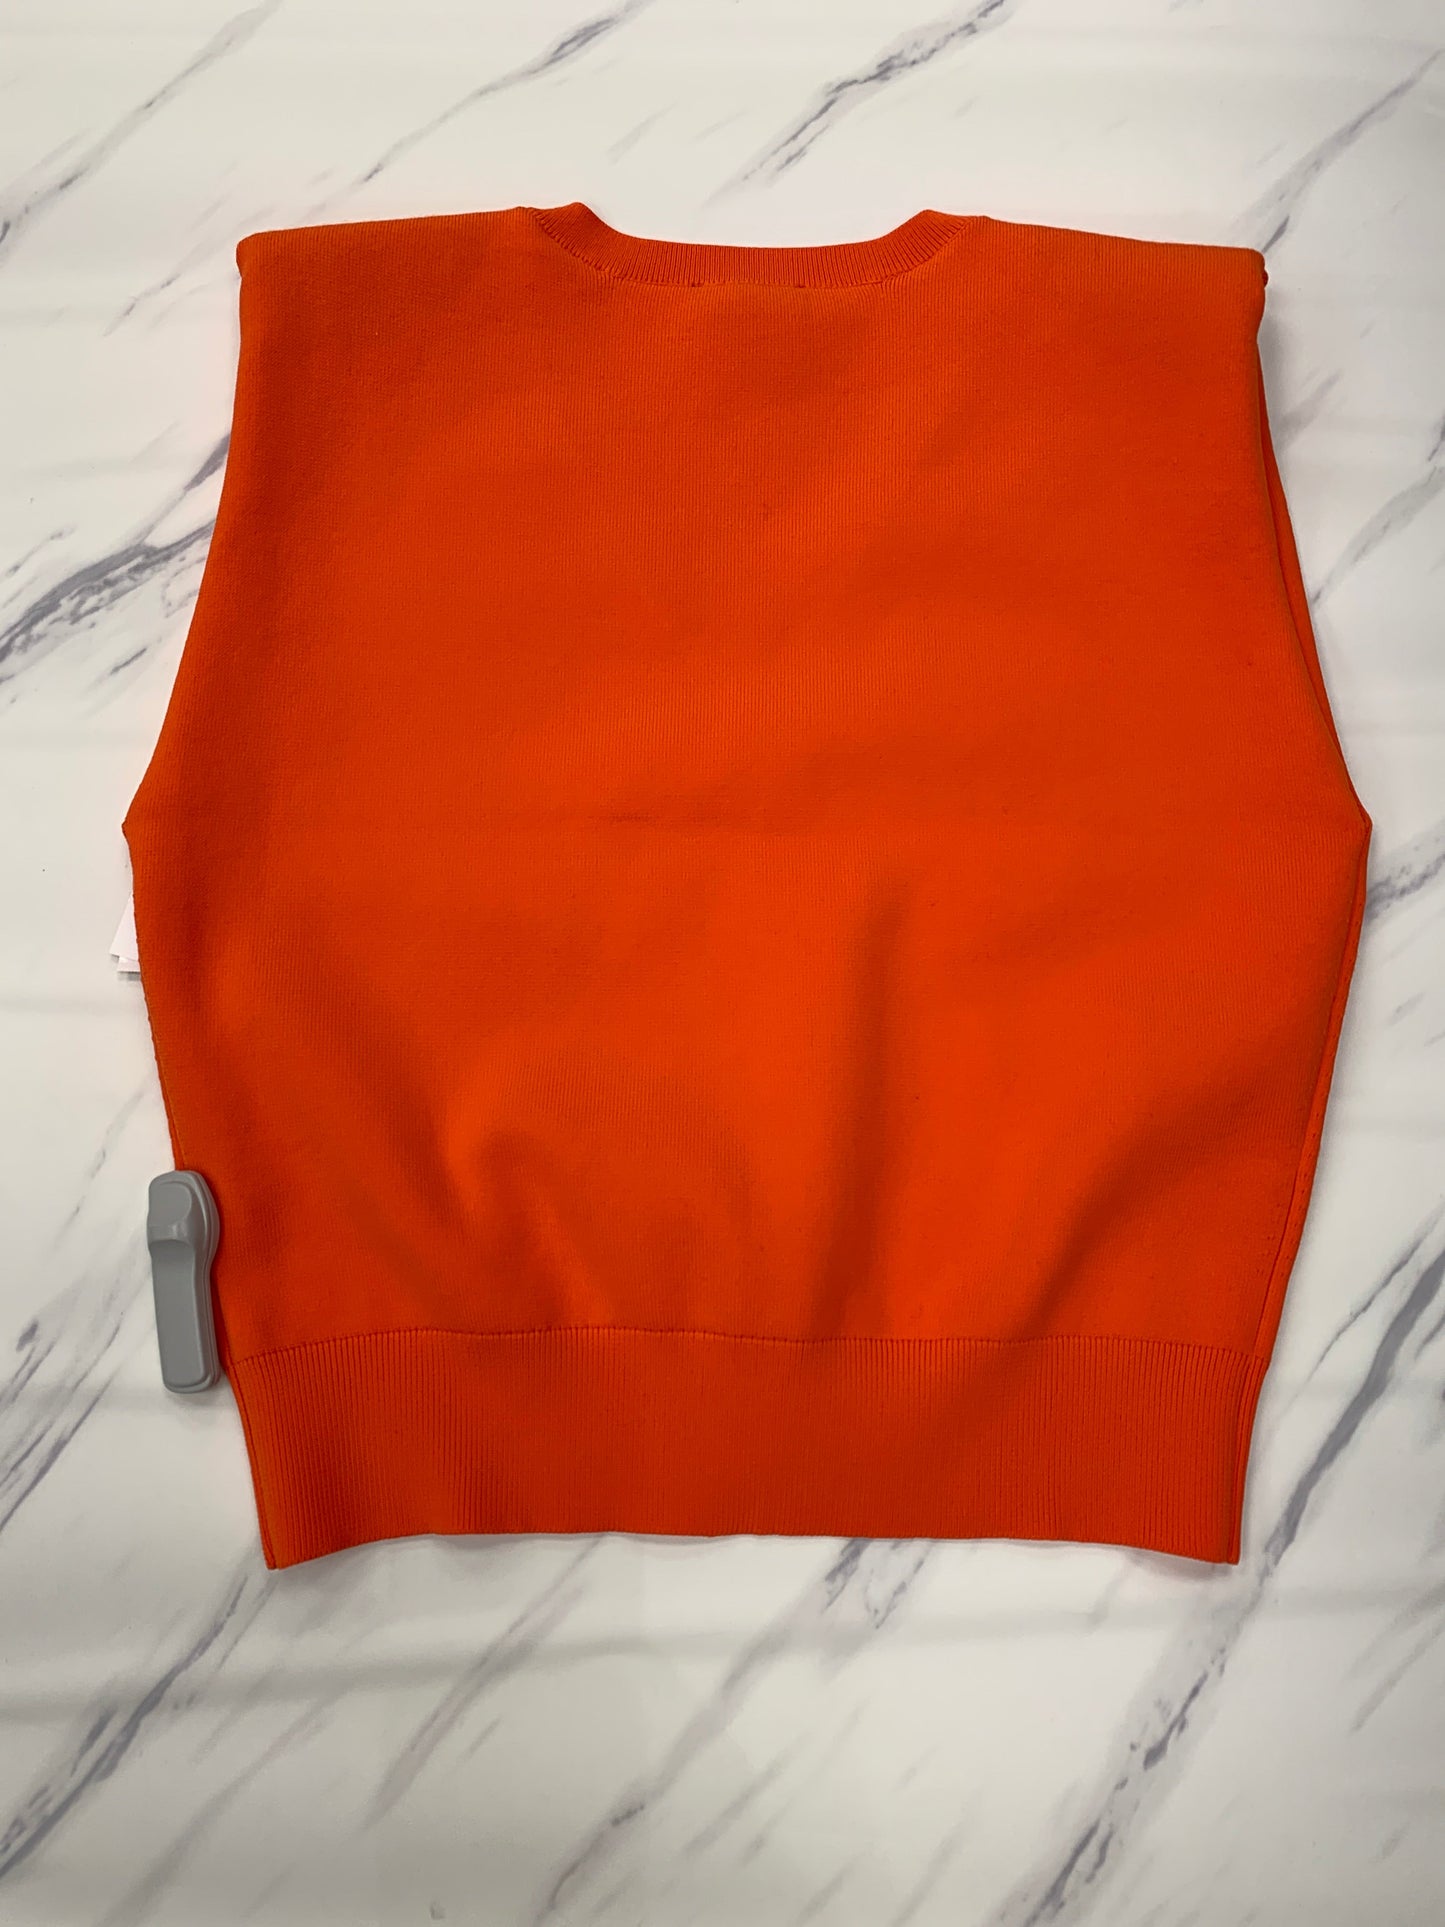 Orange Sweater Short Sleeve Express, Size M